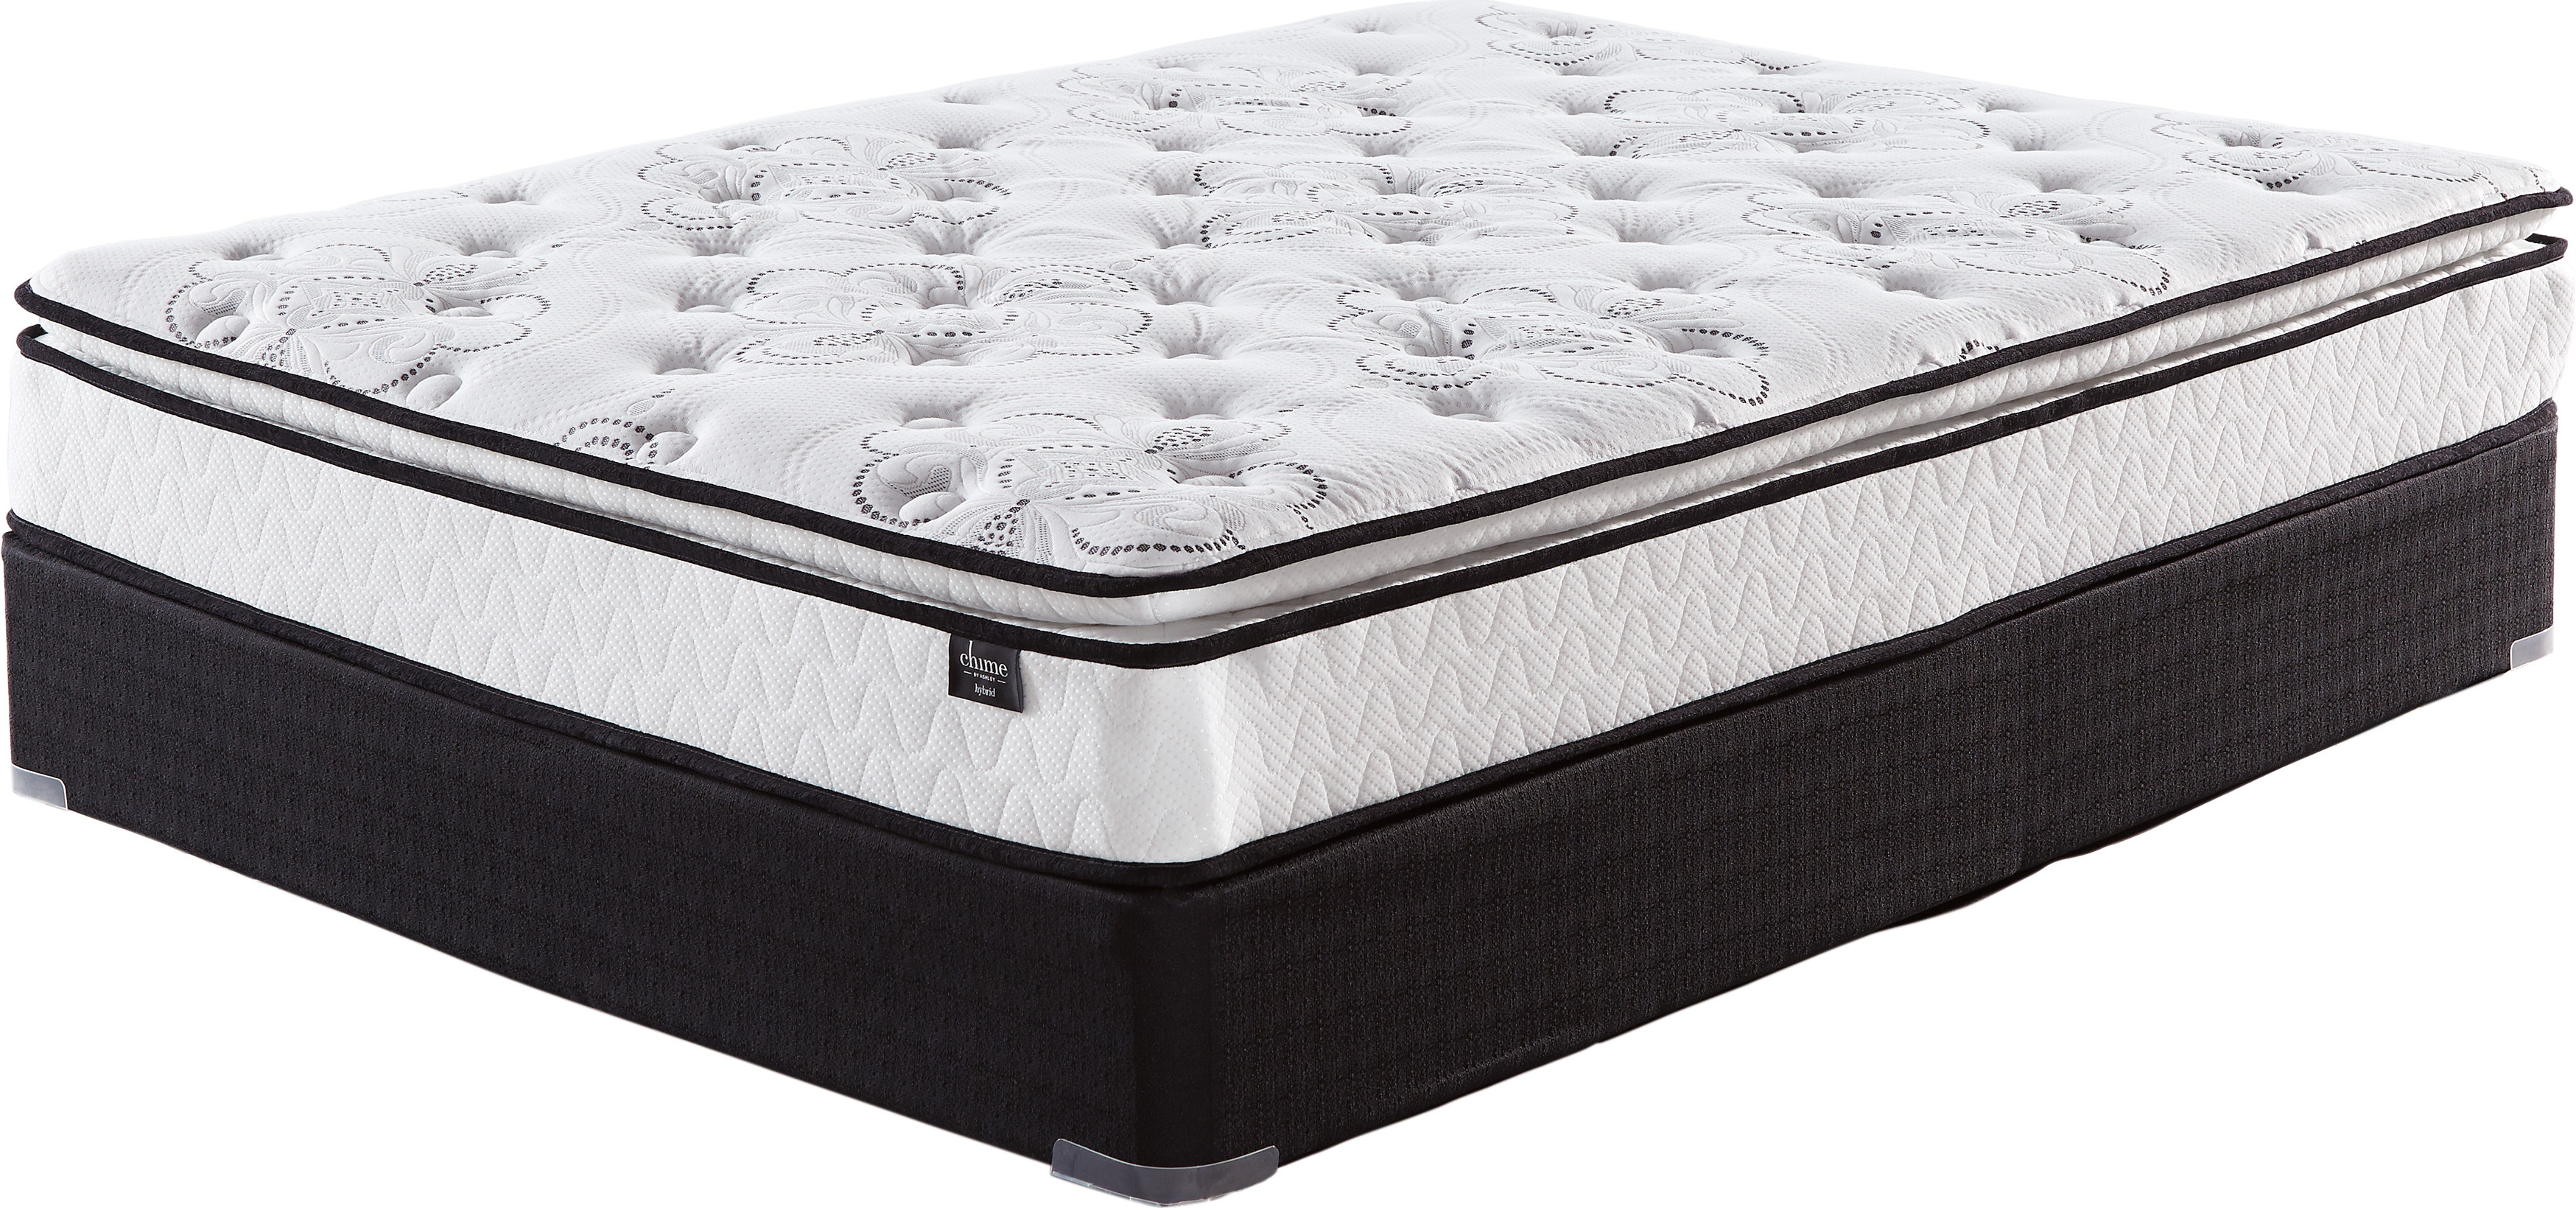 10 inch bonnell pt king mattress